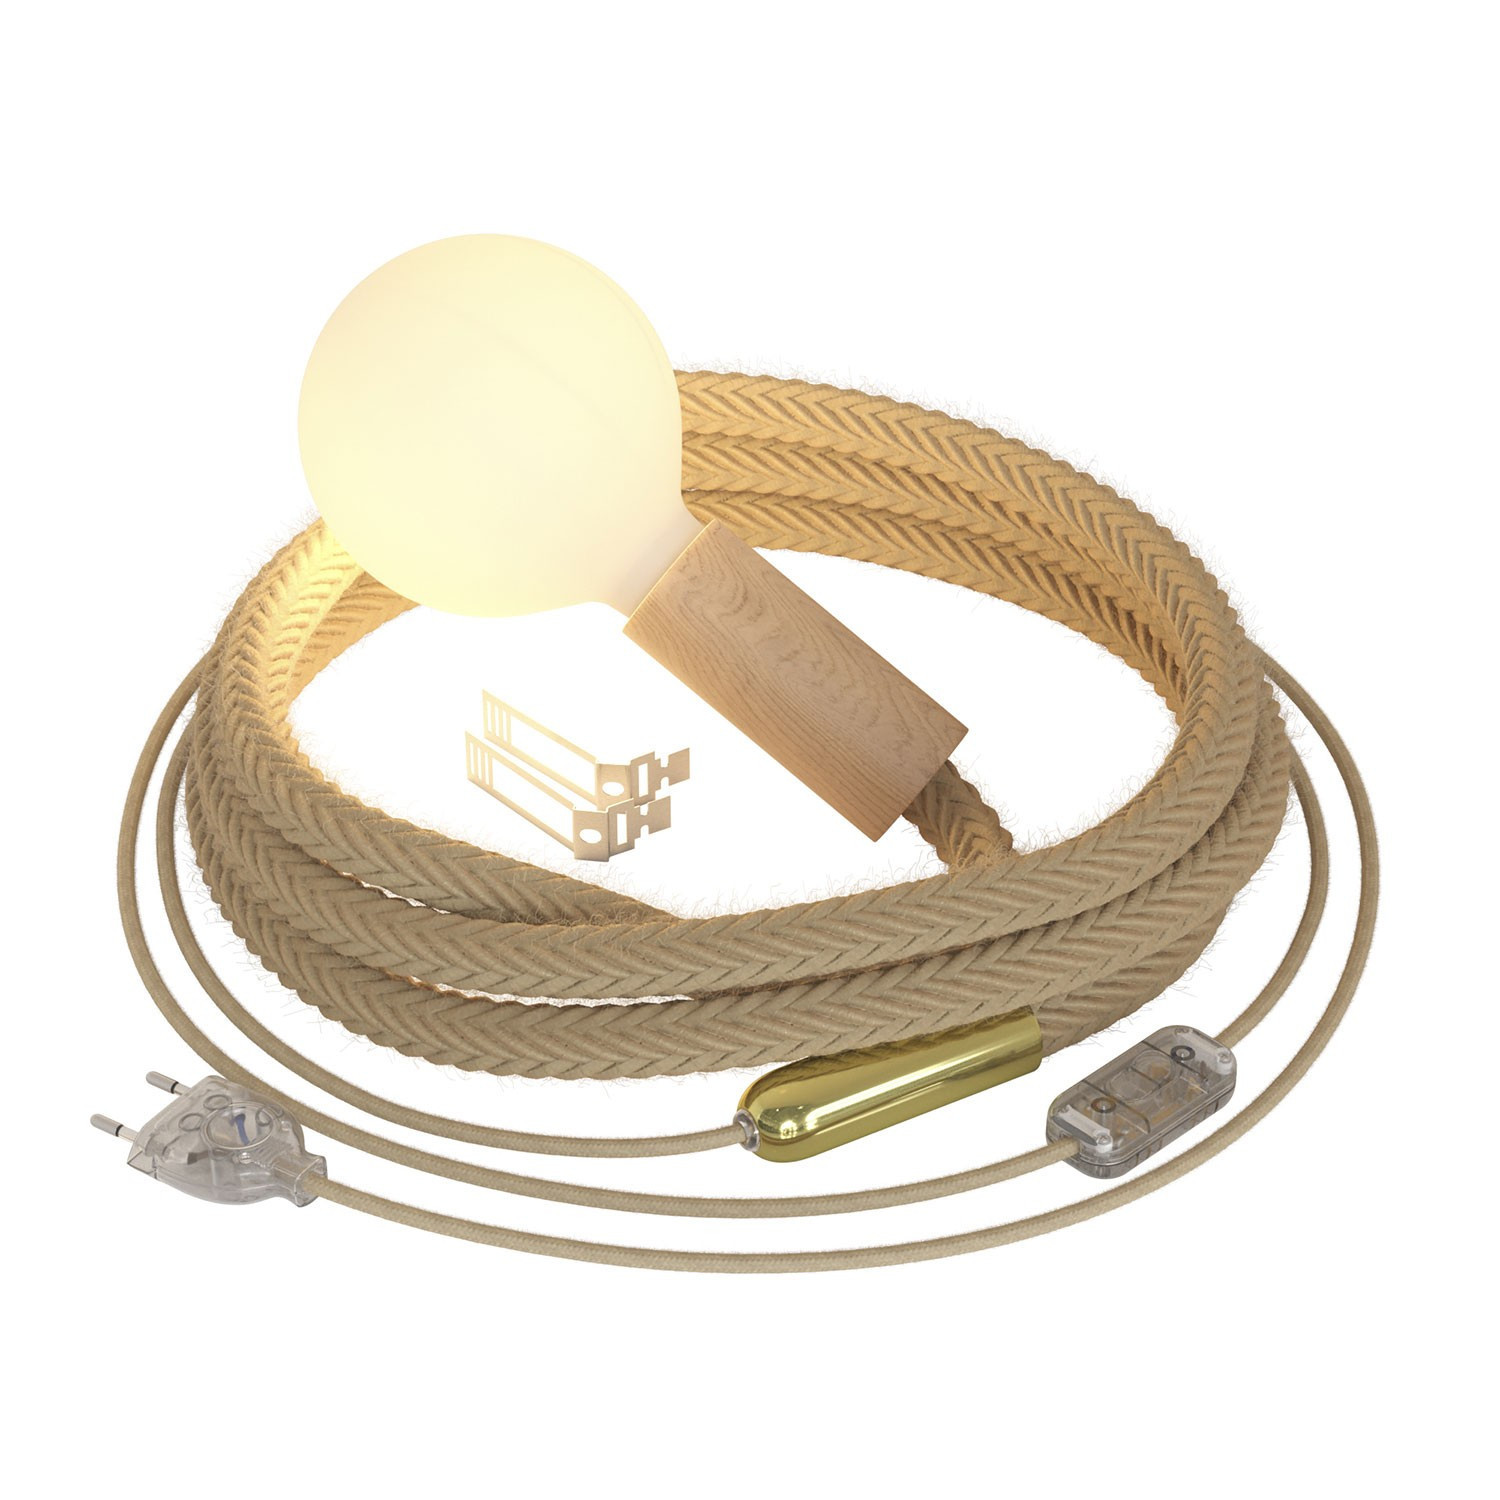 SnakeBis Corda - Lampada plug-in con cordone trecciato in juta